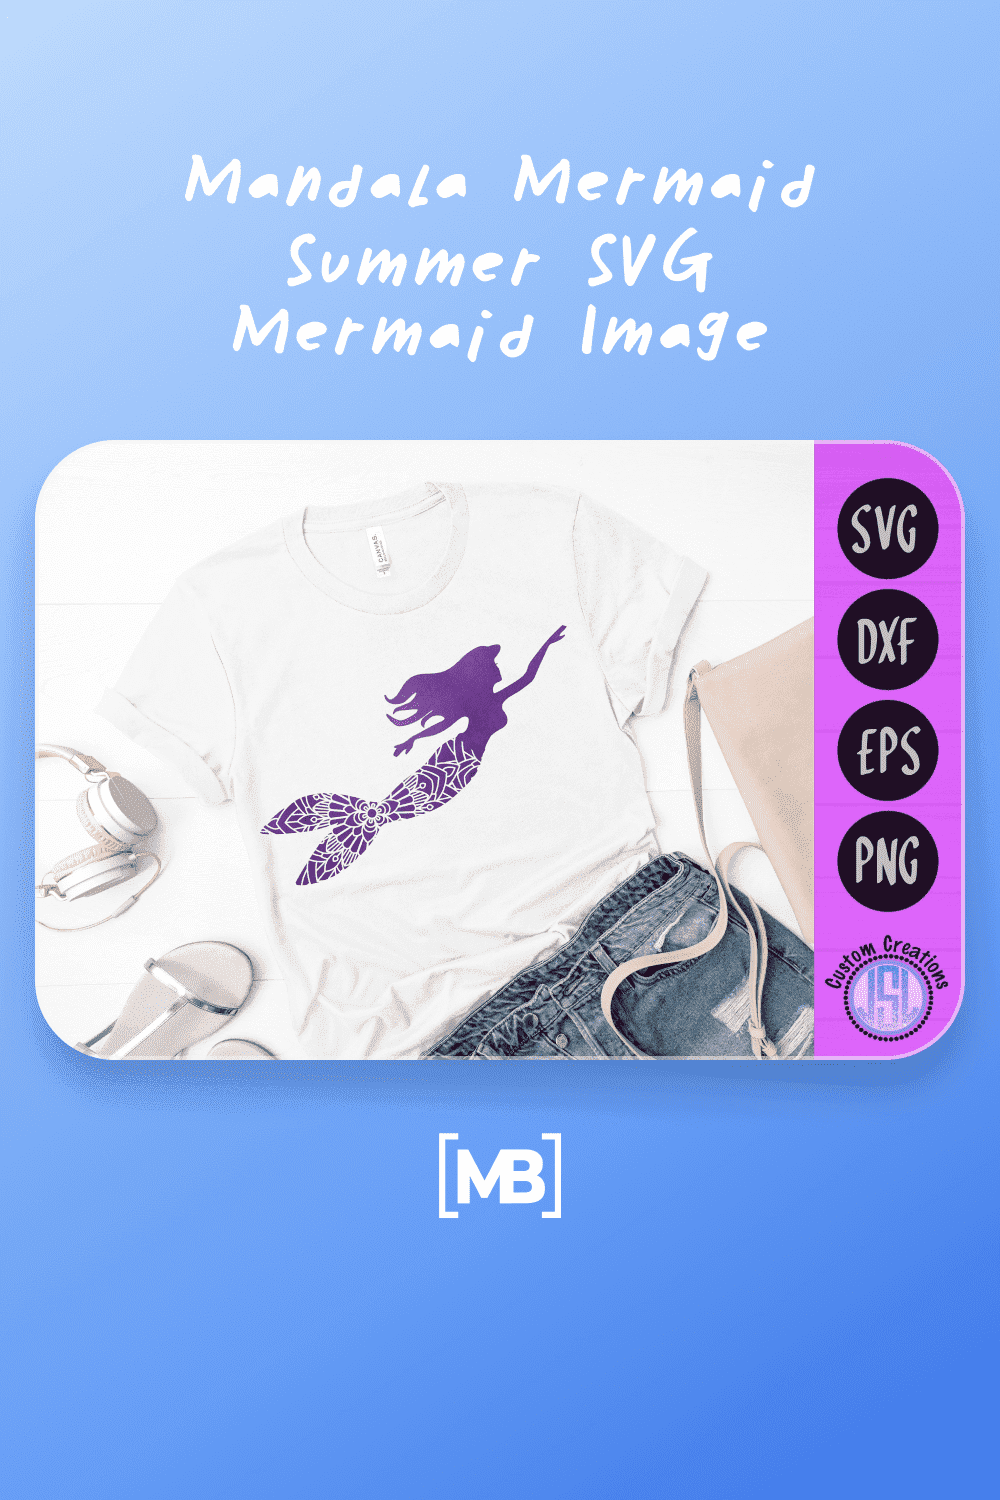 Mandala Mermaid | Summer SVG Mermaid Image.